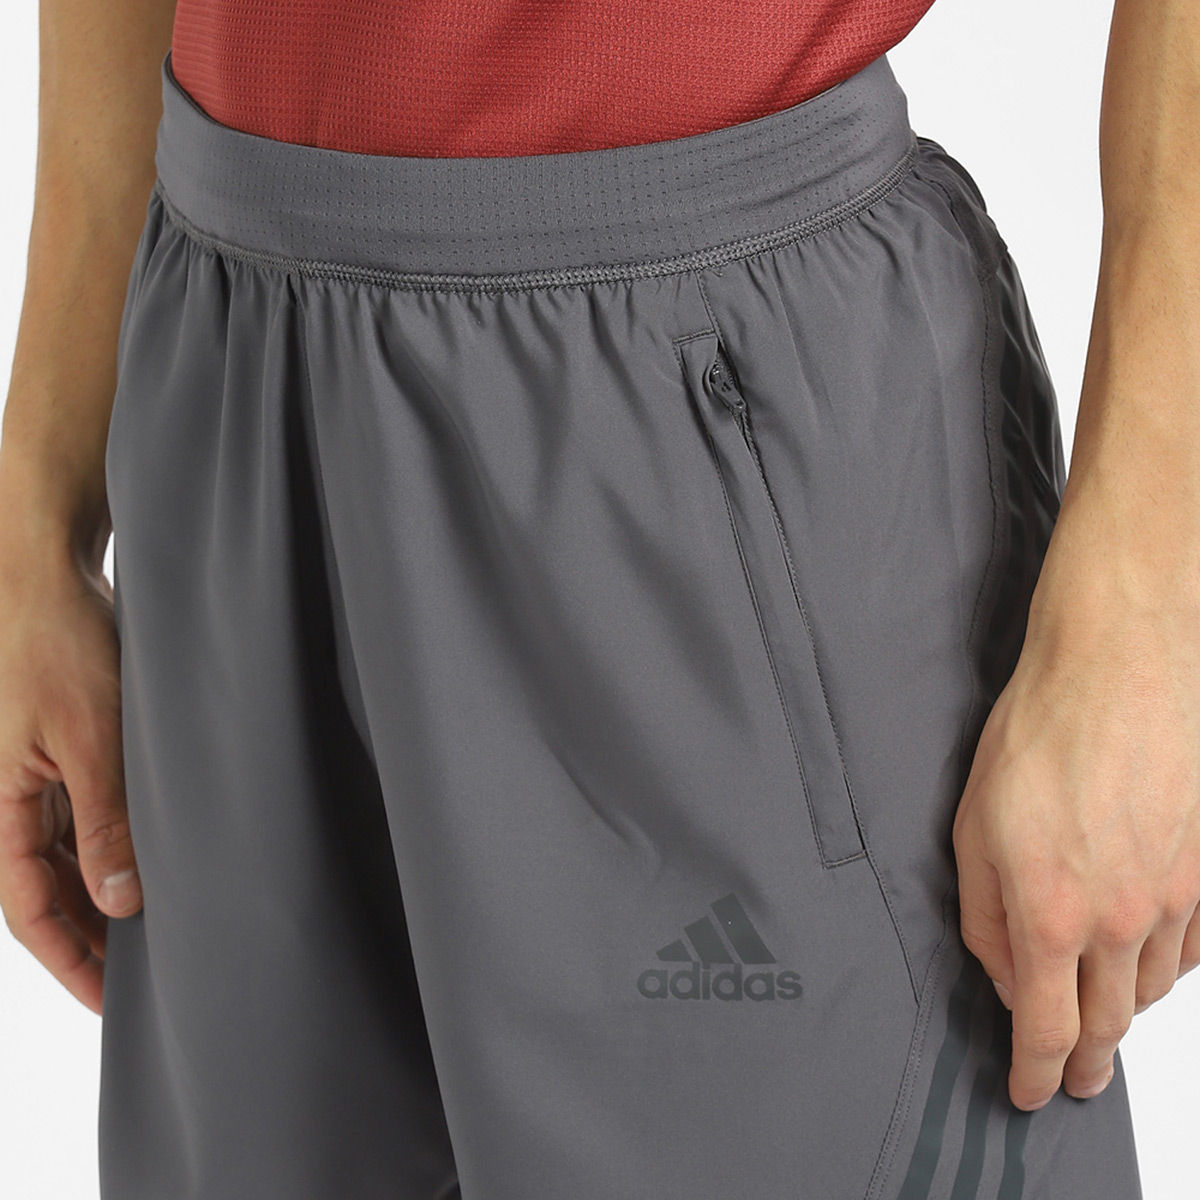 Adidas Tiro17 Training Pants Grey  Mens  Juggles Football Culture